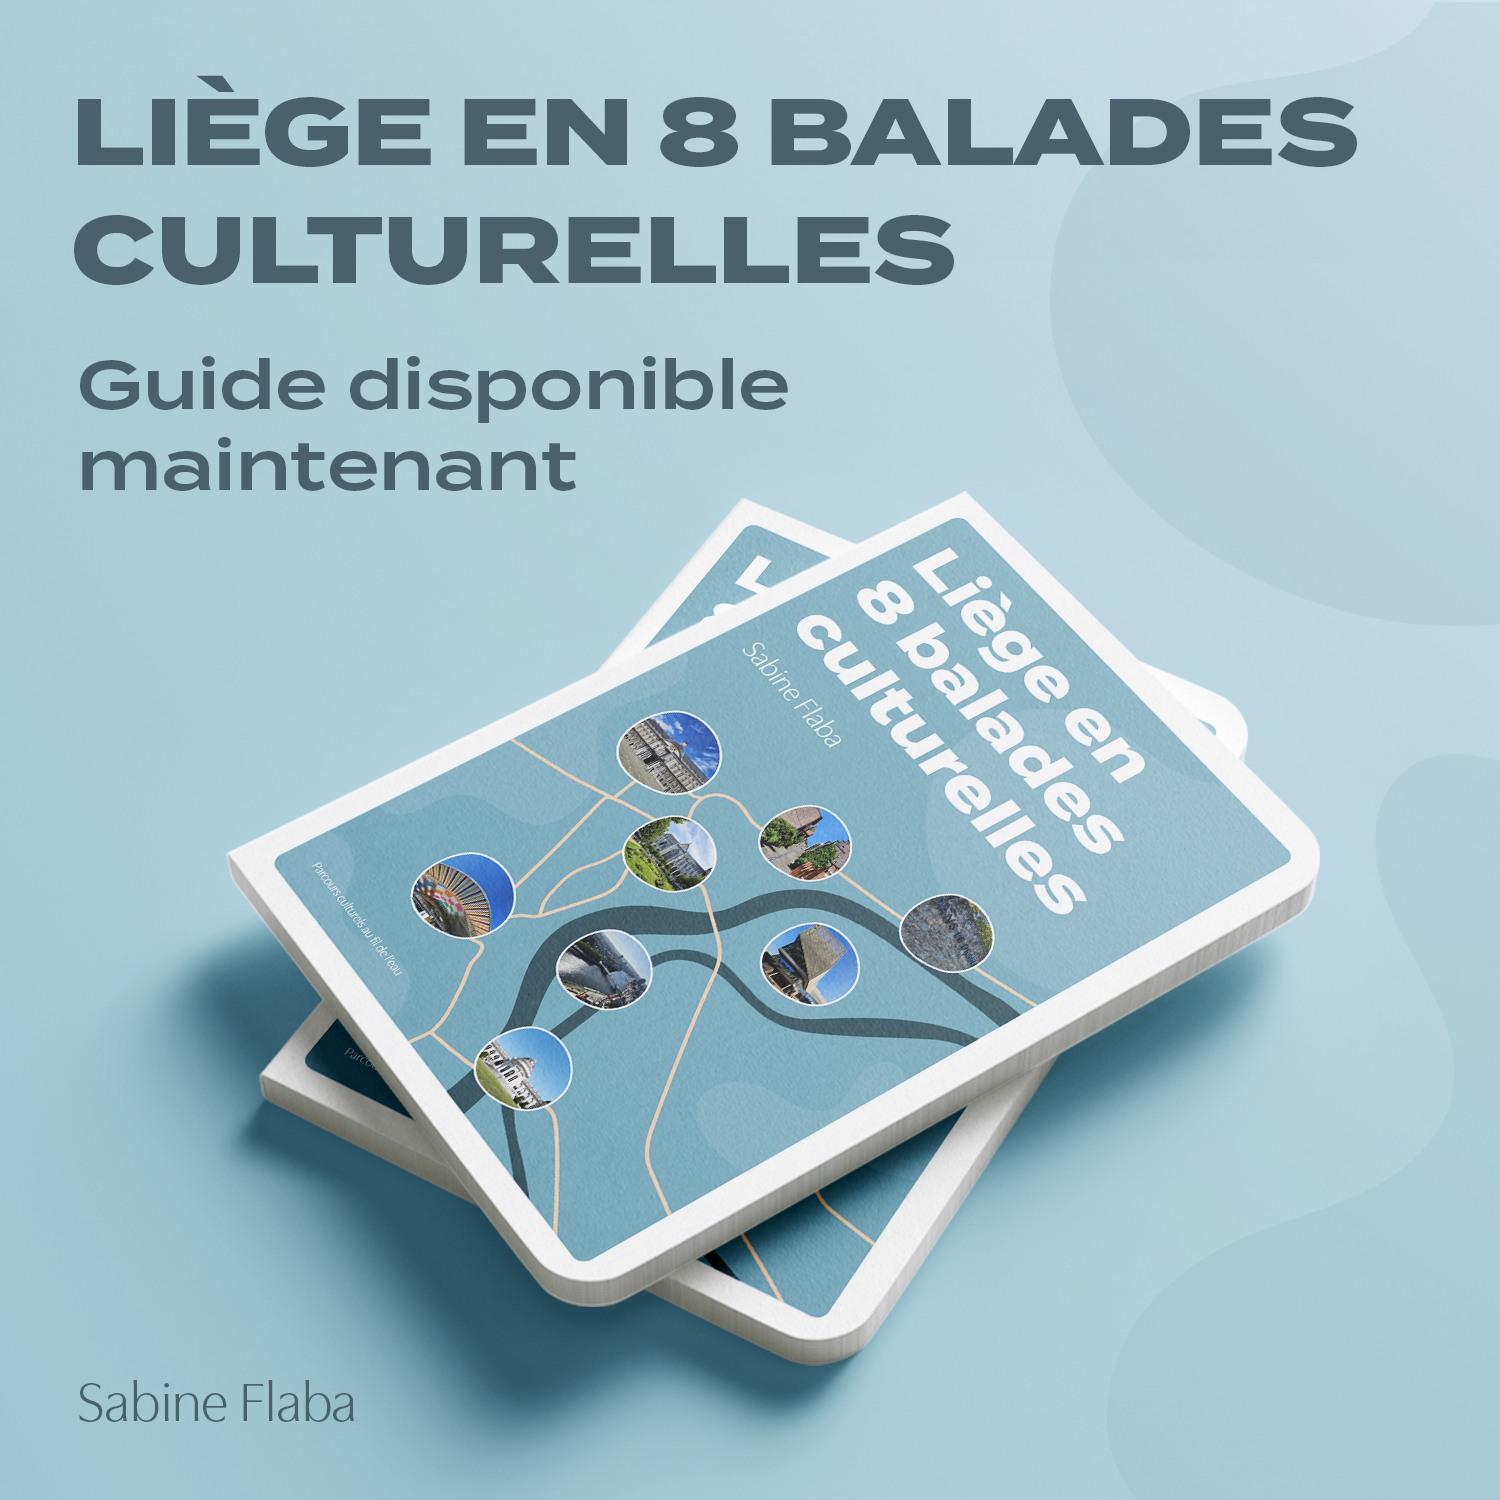 "Liège en 8 balades culturelles"